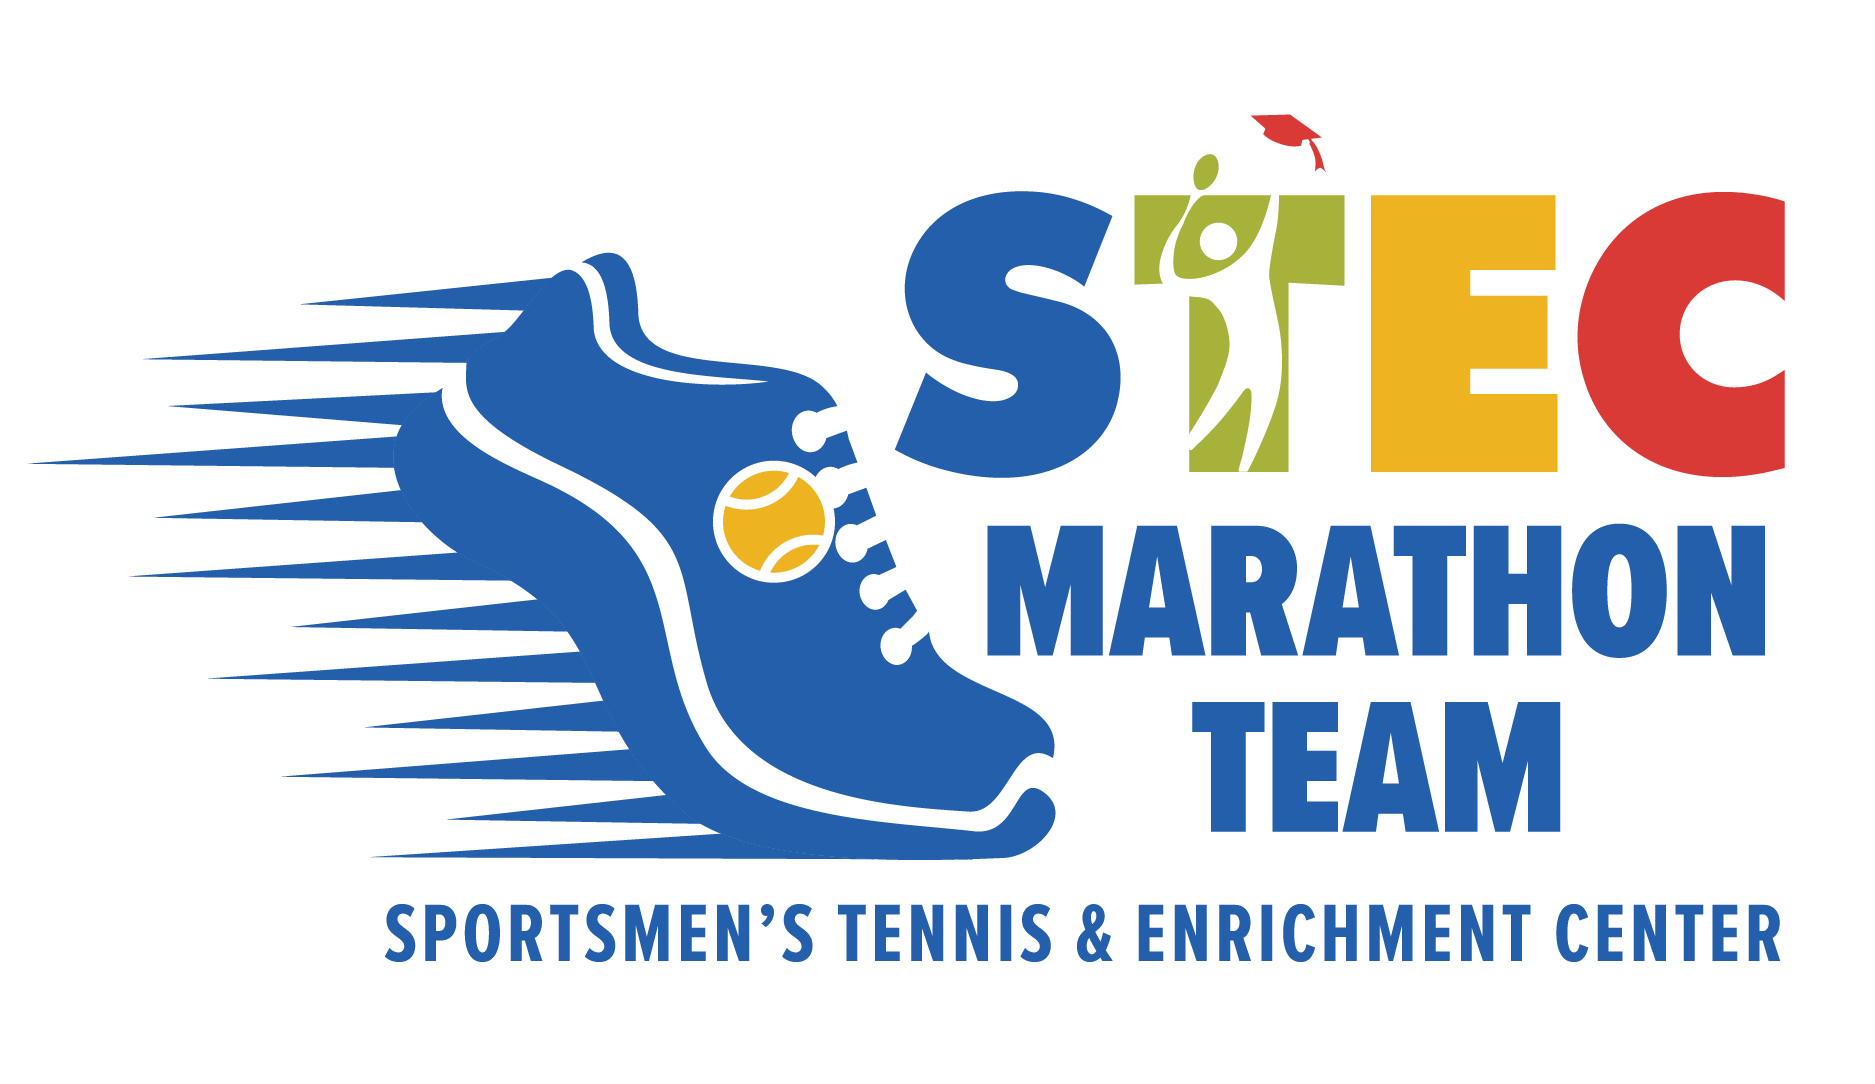 Sportsmen's Marathon Team: Gracie Poston - The Sportsmen’s Tennis ...